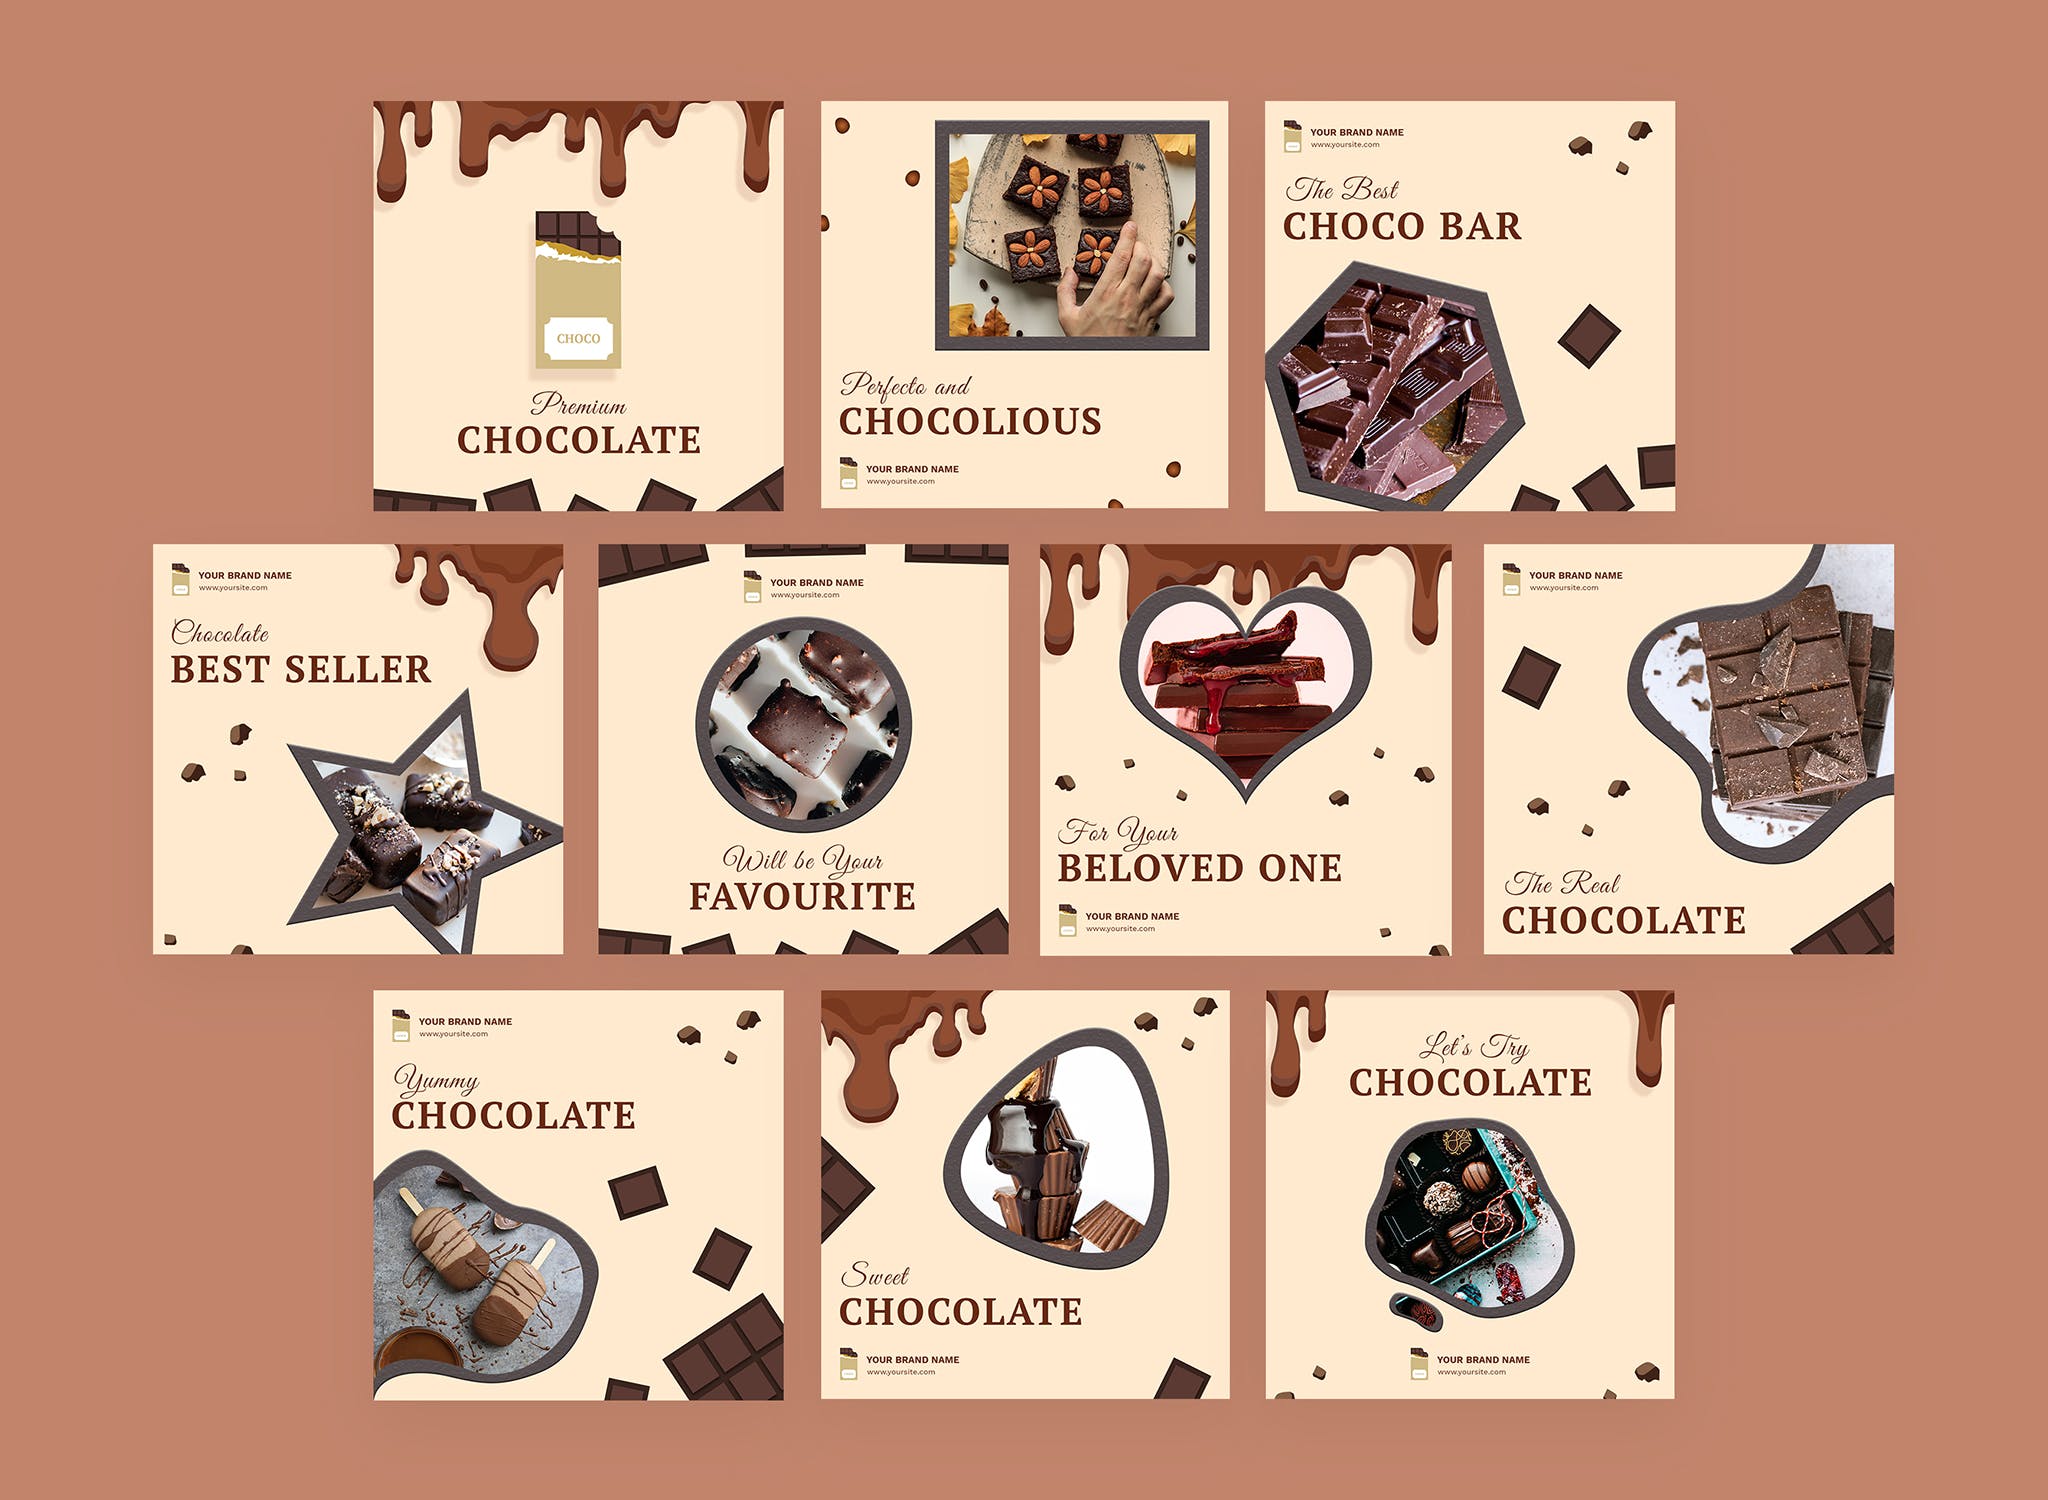 巧克力品牌营销Instagram社交信息流广告模板素材库精选 Cioccolato – Instagram Feeds Pack插图(1)